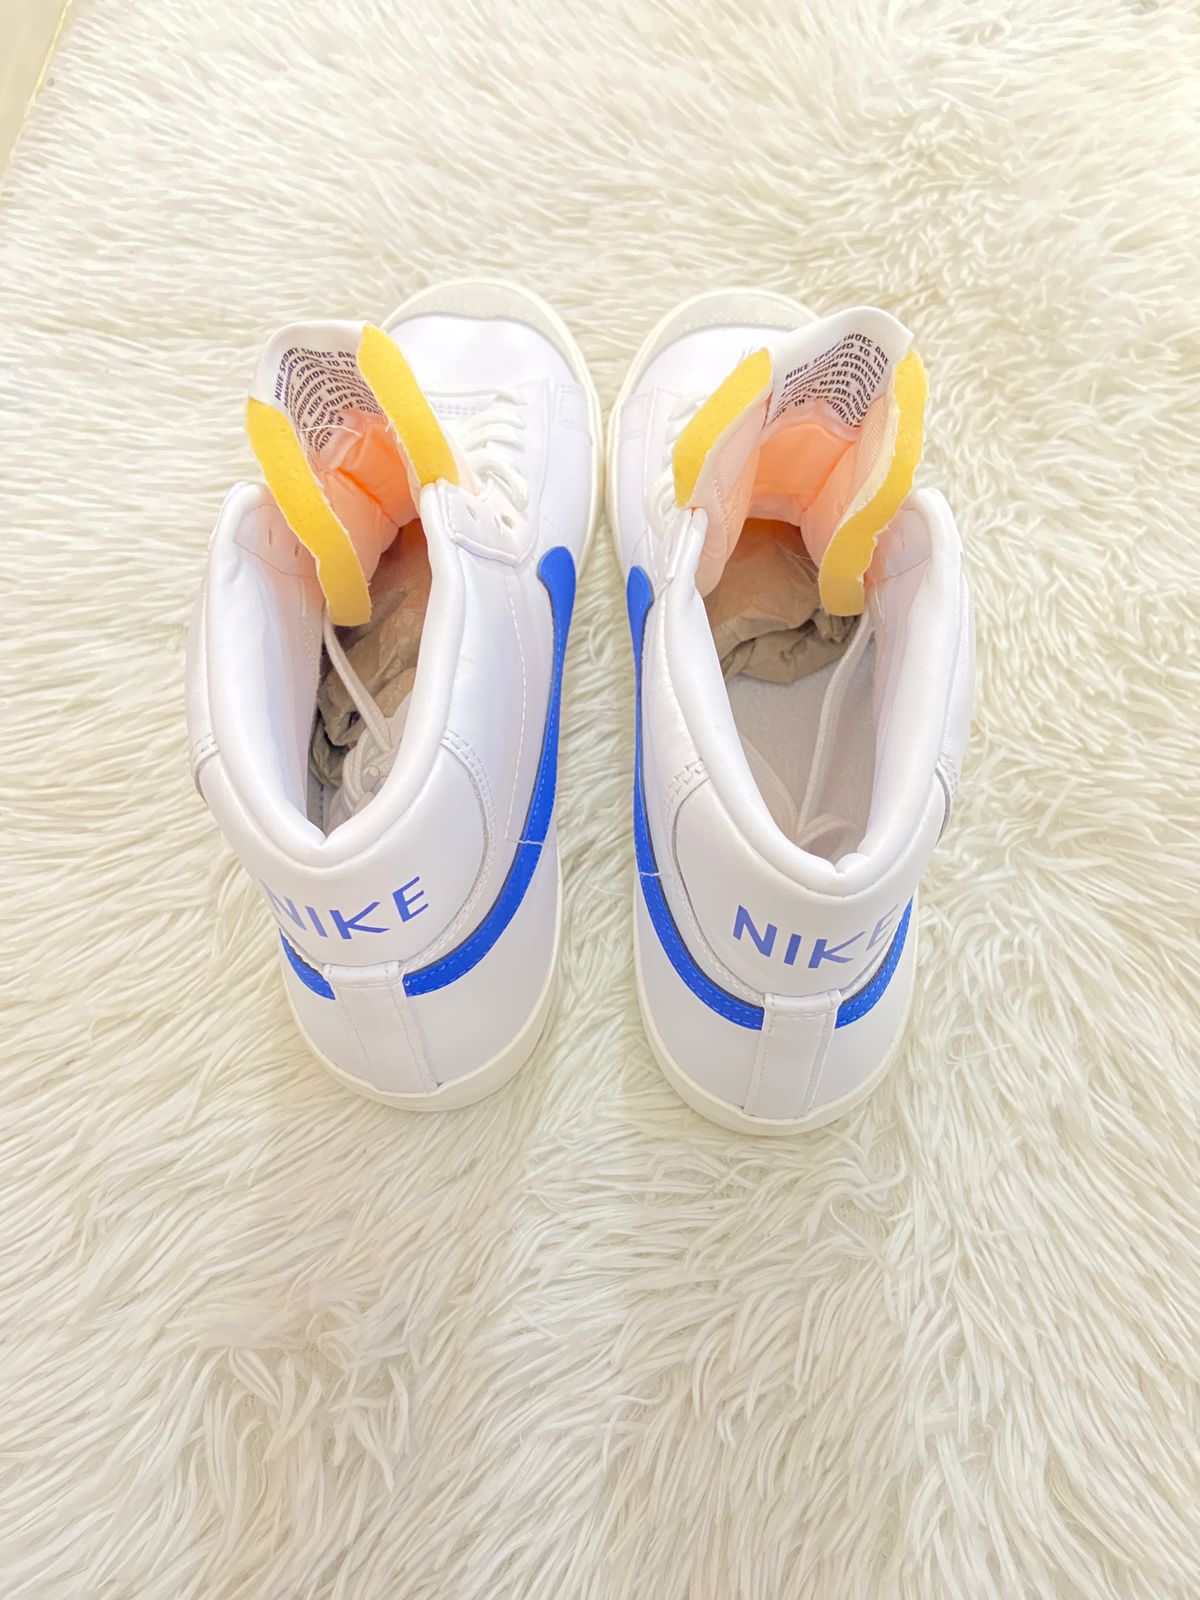 Tenis Nike original alto en color blanco con logotipo Nike en ambos lados en azul